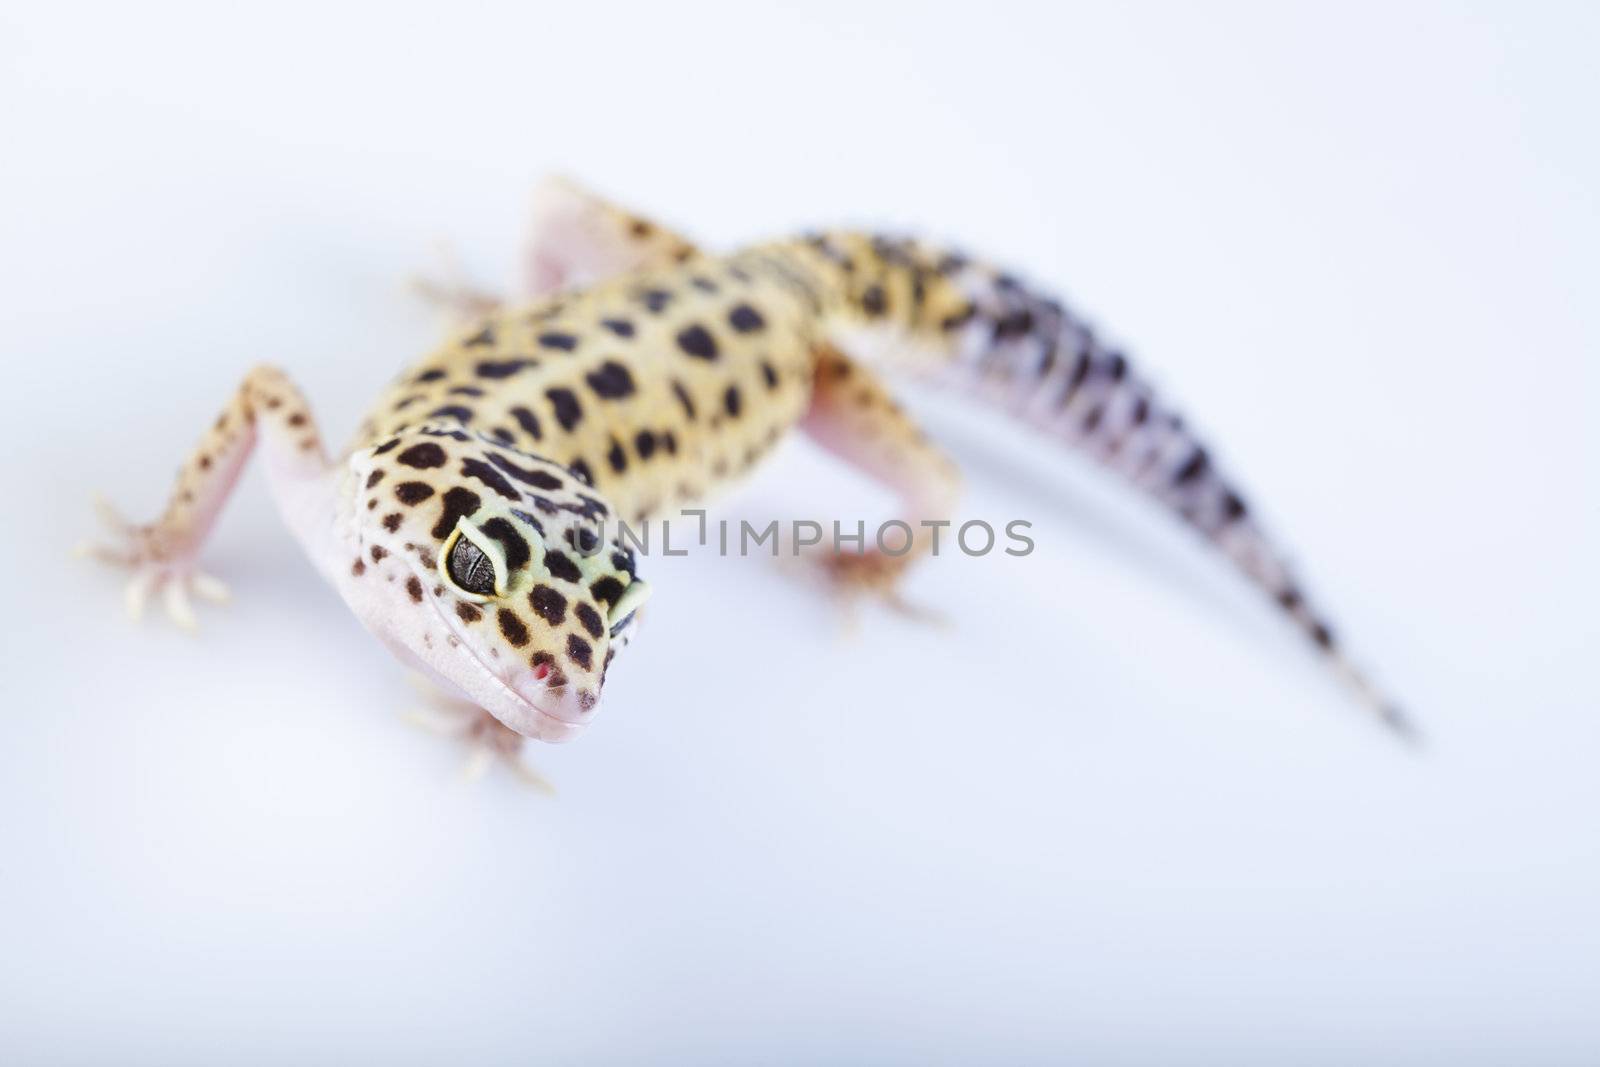 Gecko in a white background by JanPietruszka